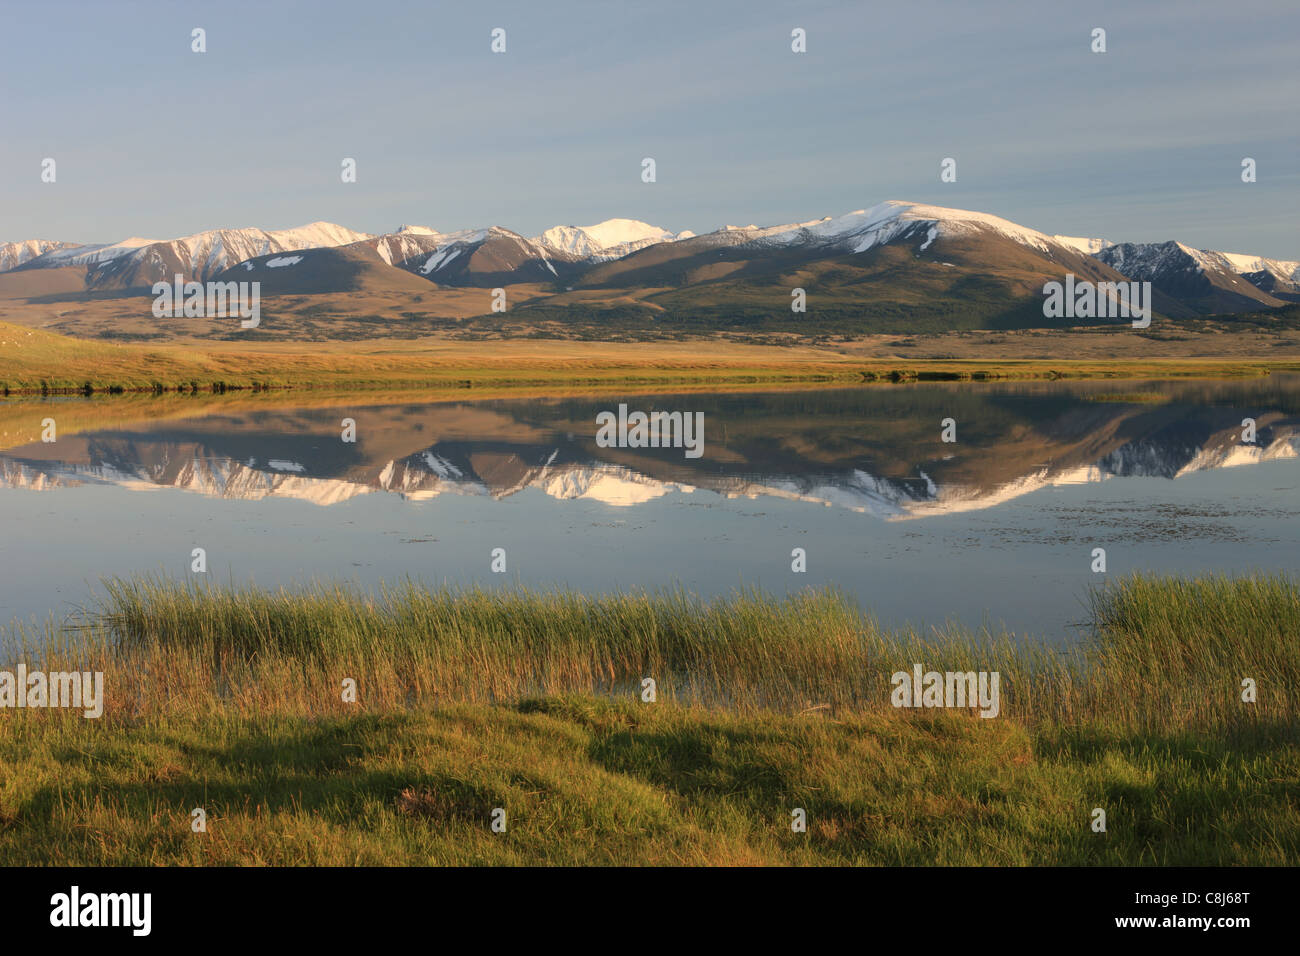 Le Parc National de l'Altaï Tavan Bogd, Hurgan Nuur, Bayan Ölgii, Mongolie, Altaï mongol, montagnes, Mountain-Valley, à l'ouest de la Mongolie, Banque D'Images